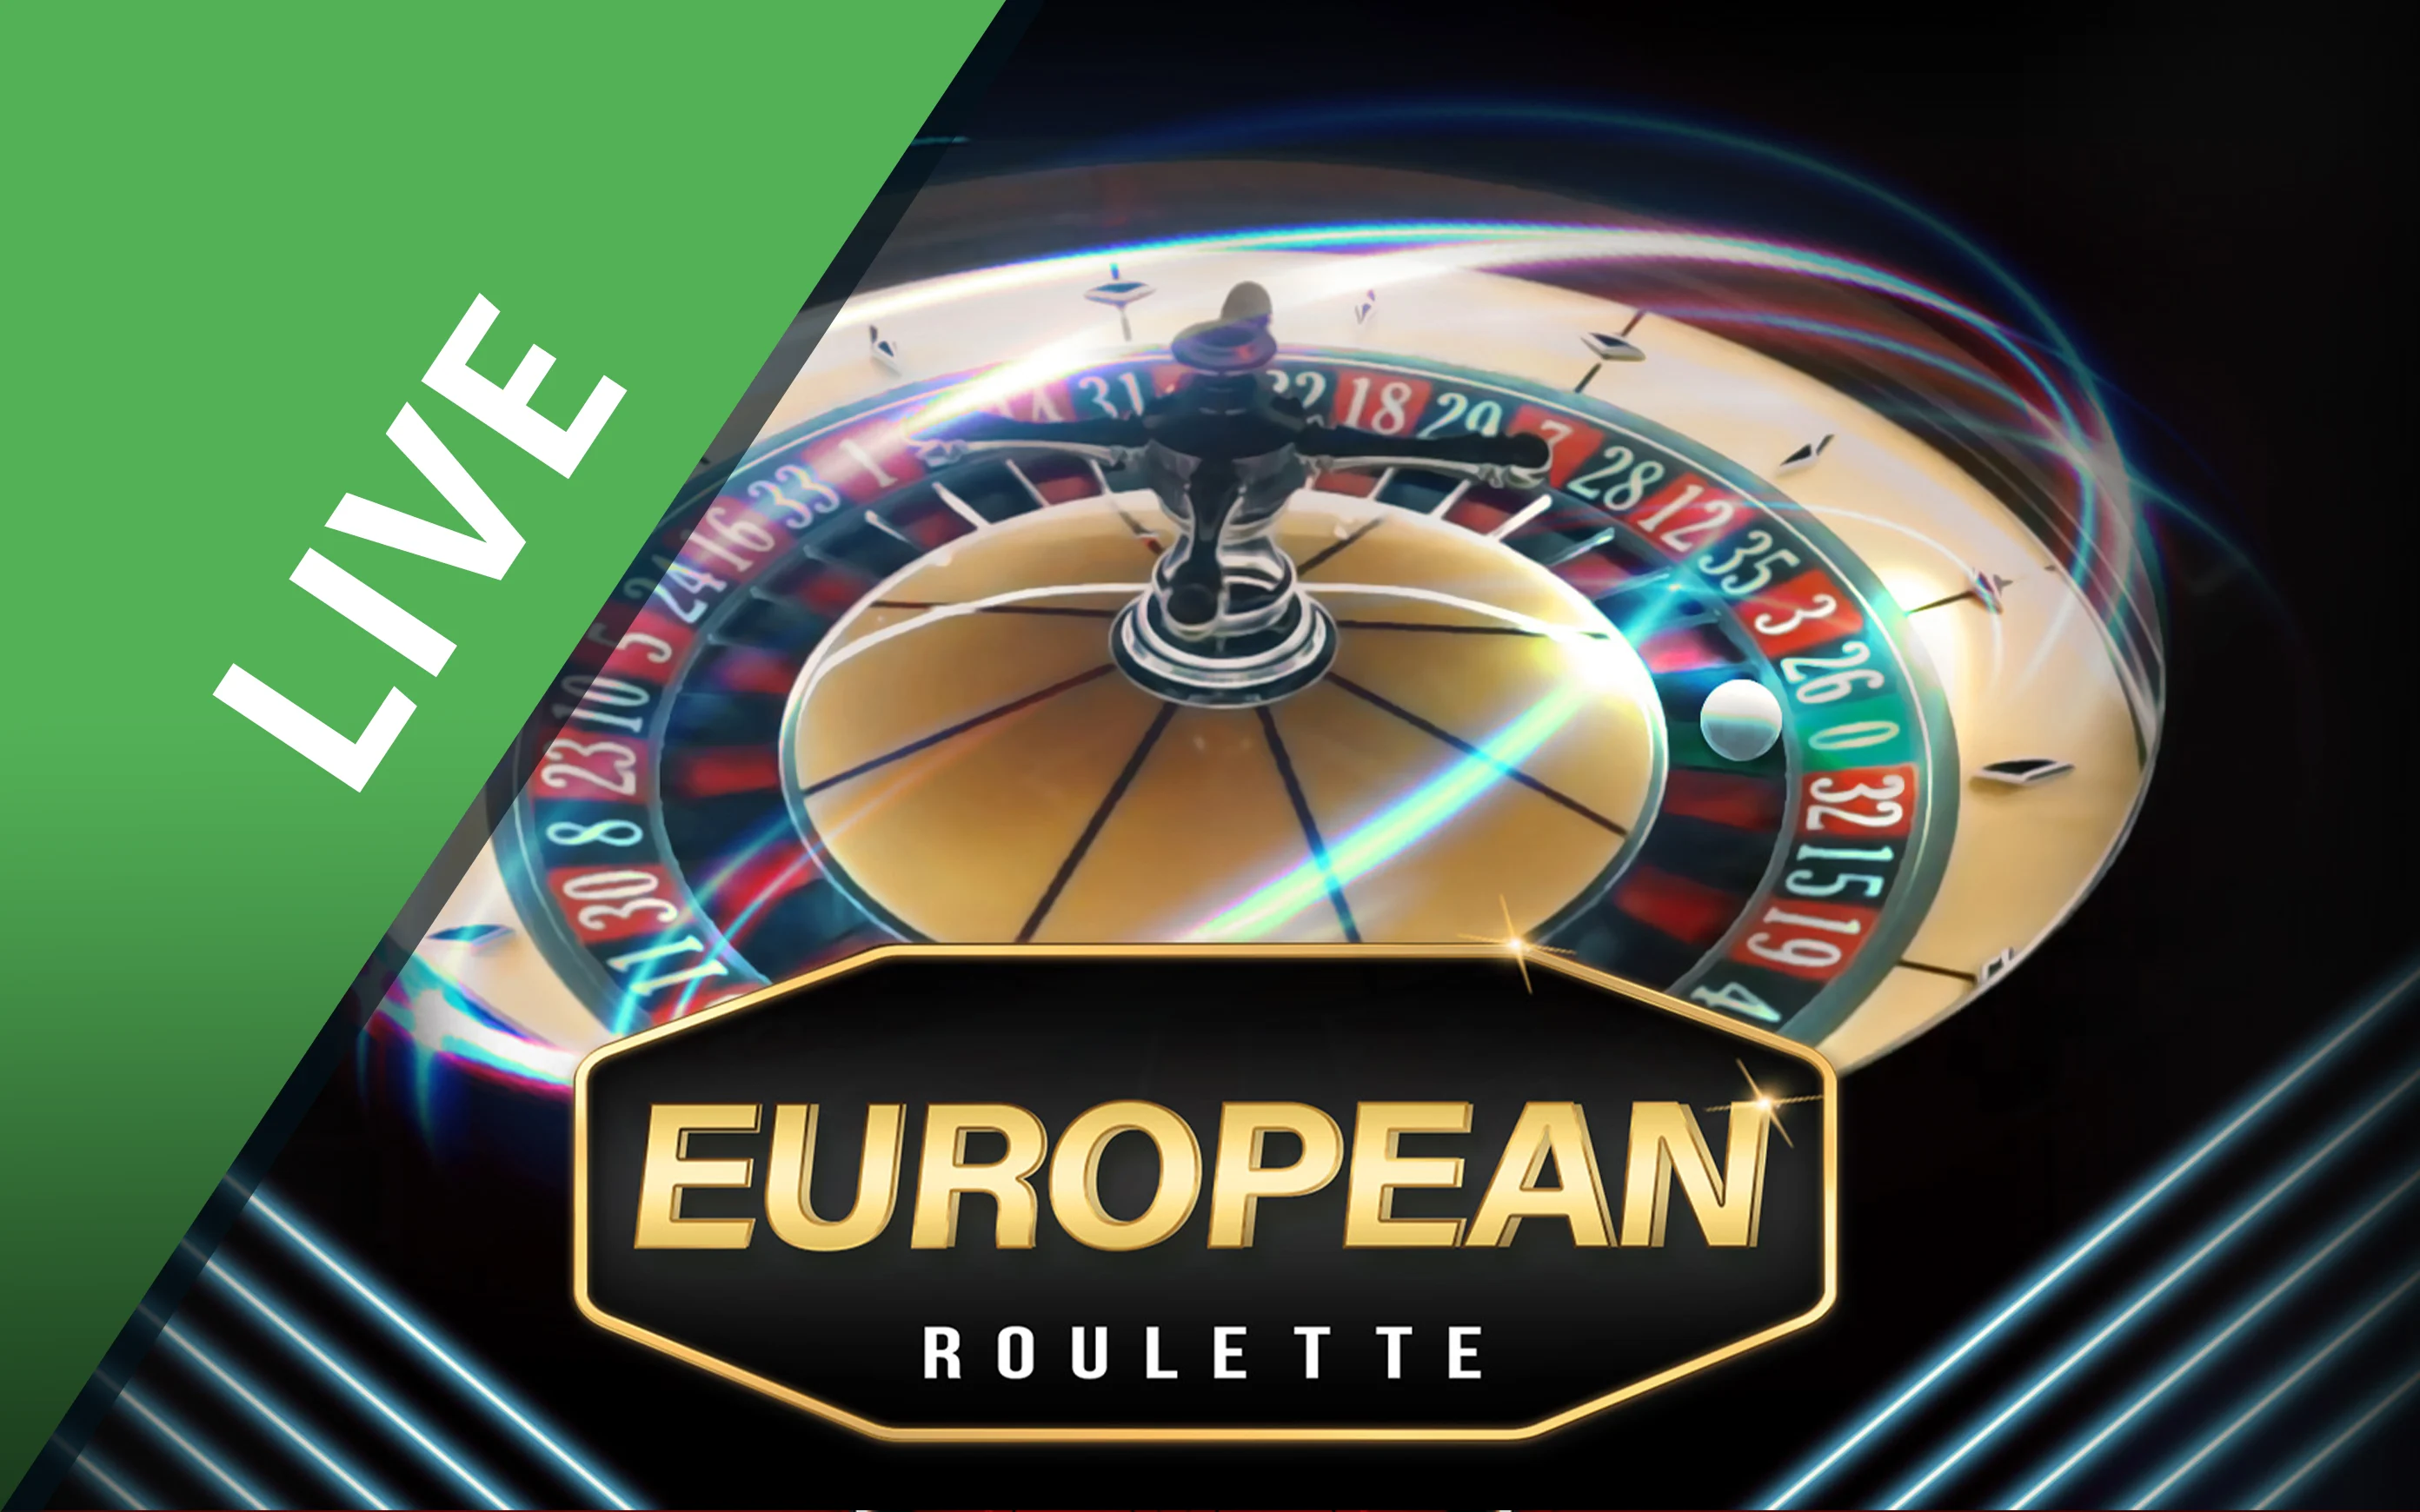 Gioca a European Roulette sul casino online Starcasino.be